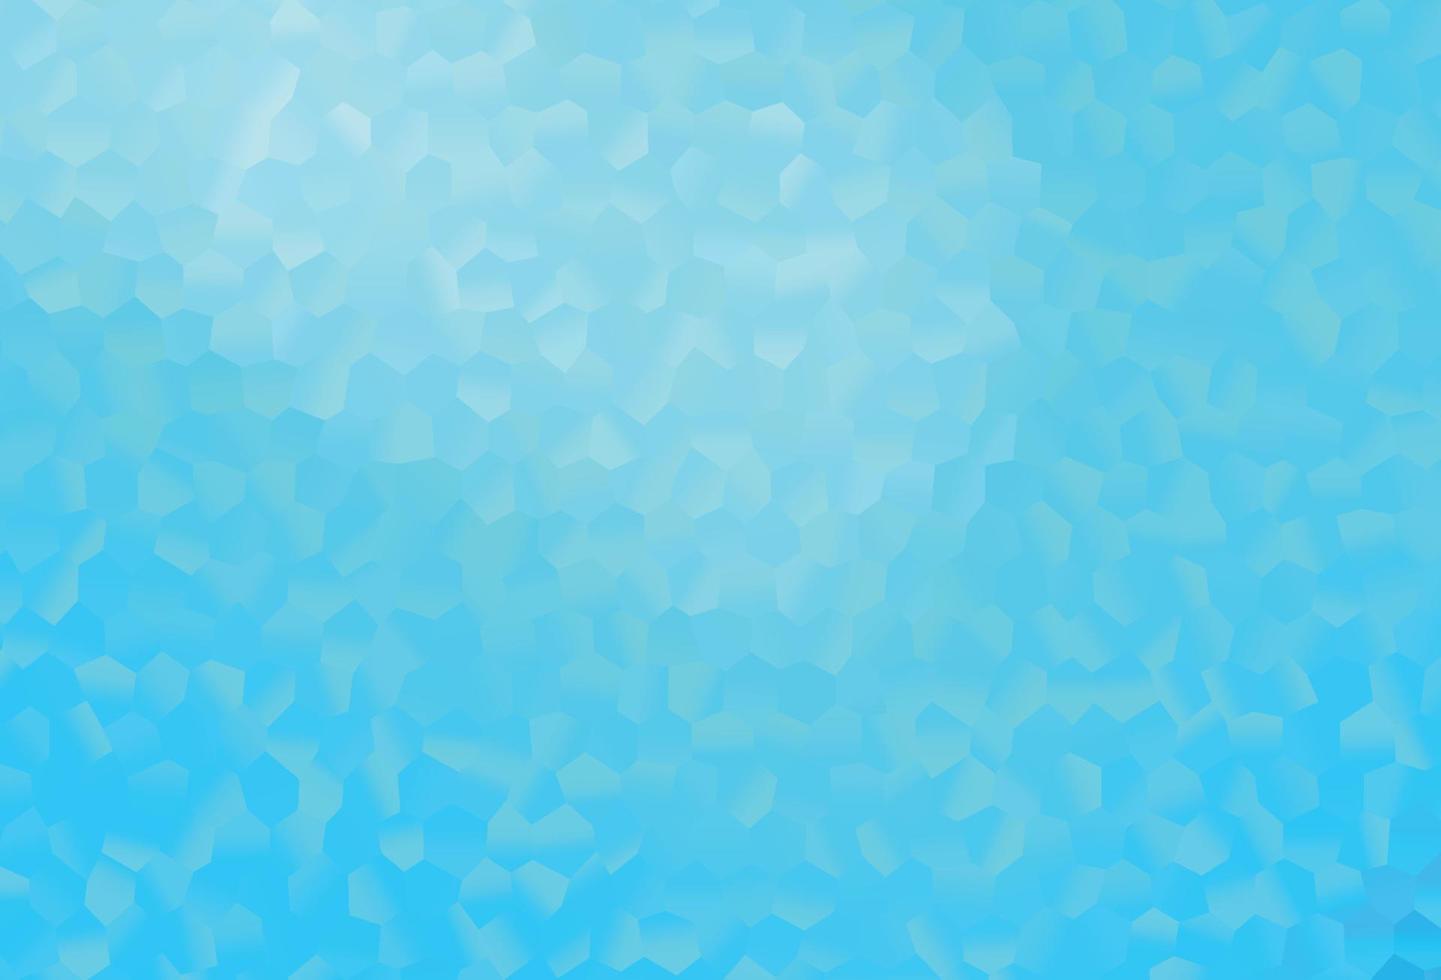 texture de vecteur bleu clair avec des hexagones colorés.